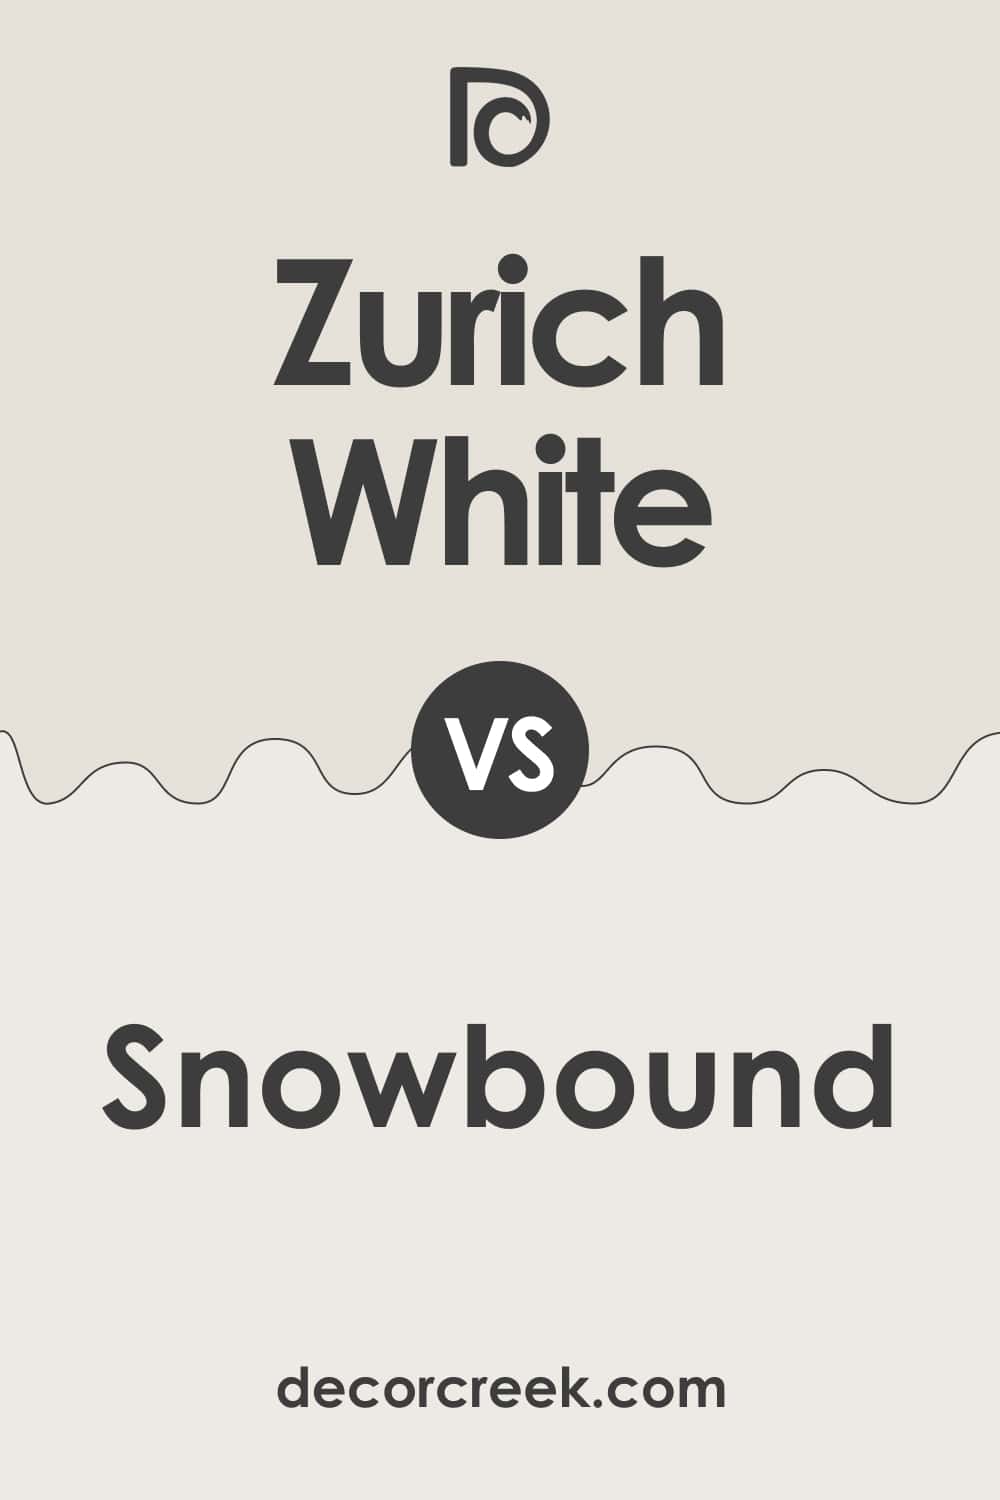 Zurich White vs Snowbound